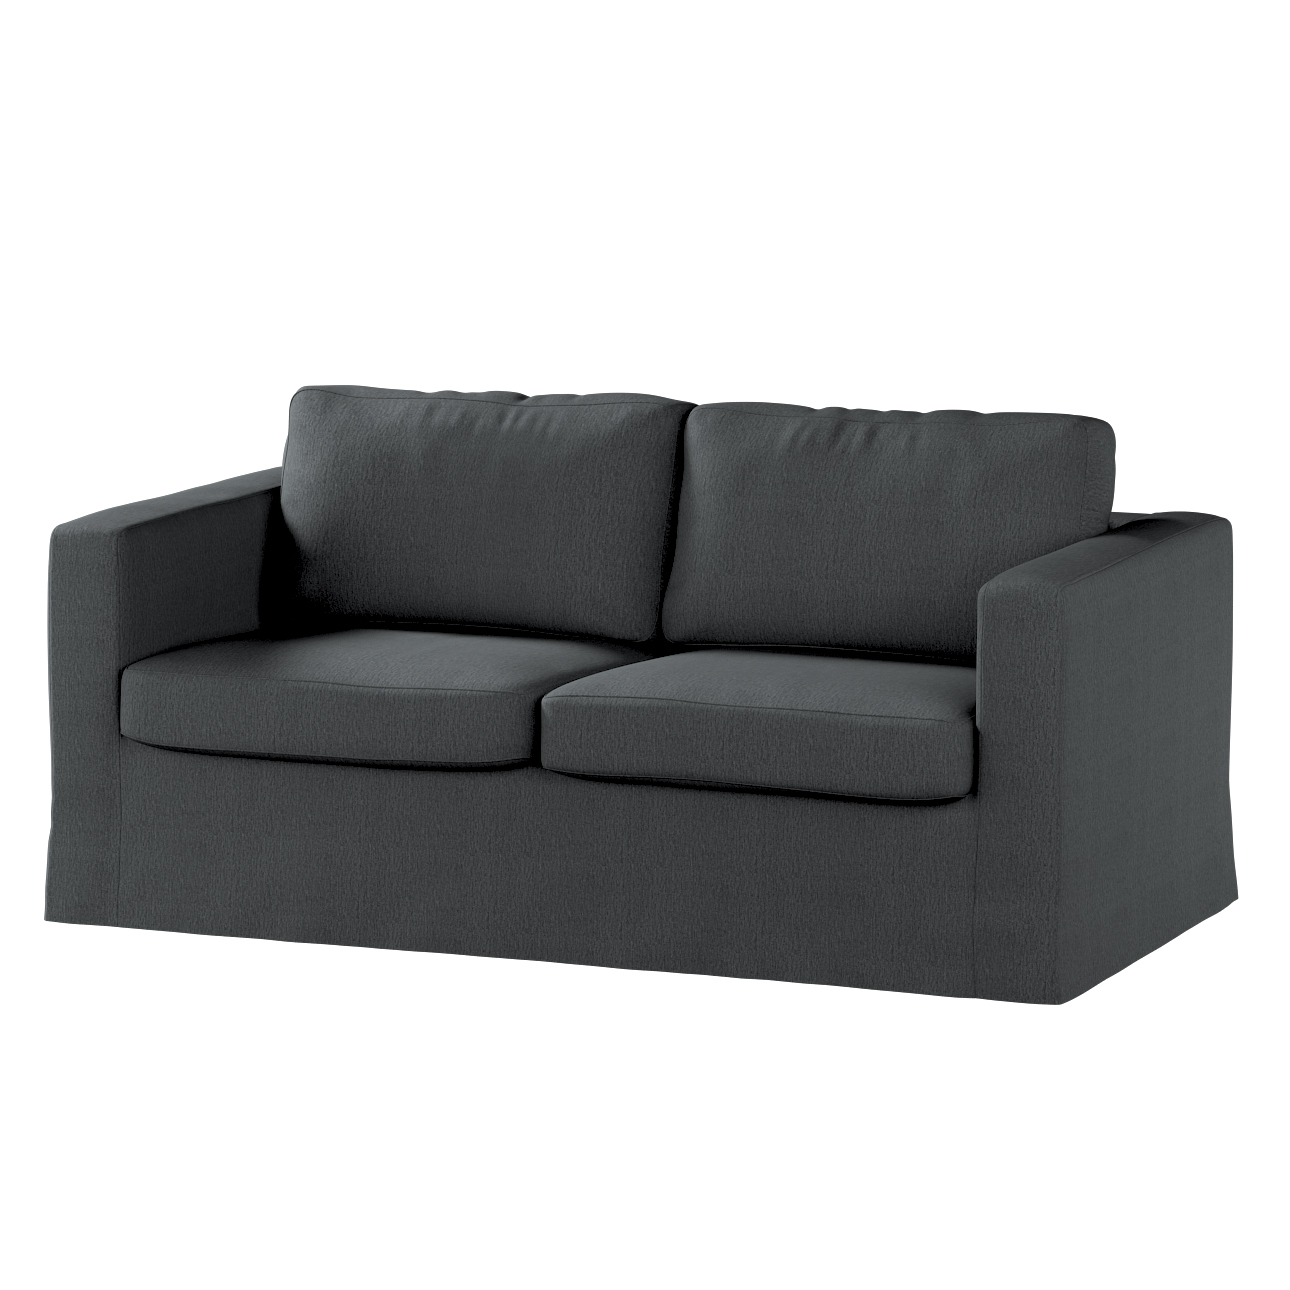 Bezug für Karlstad 2-Sitzer Sofa nicht ausklappbar, lang, stahlgrau, Sofahu günstig online kaufen